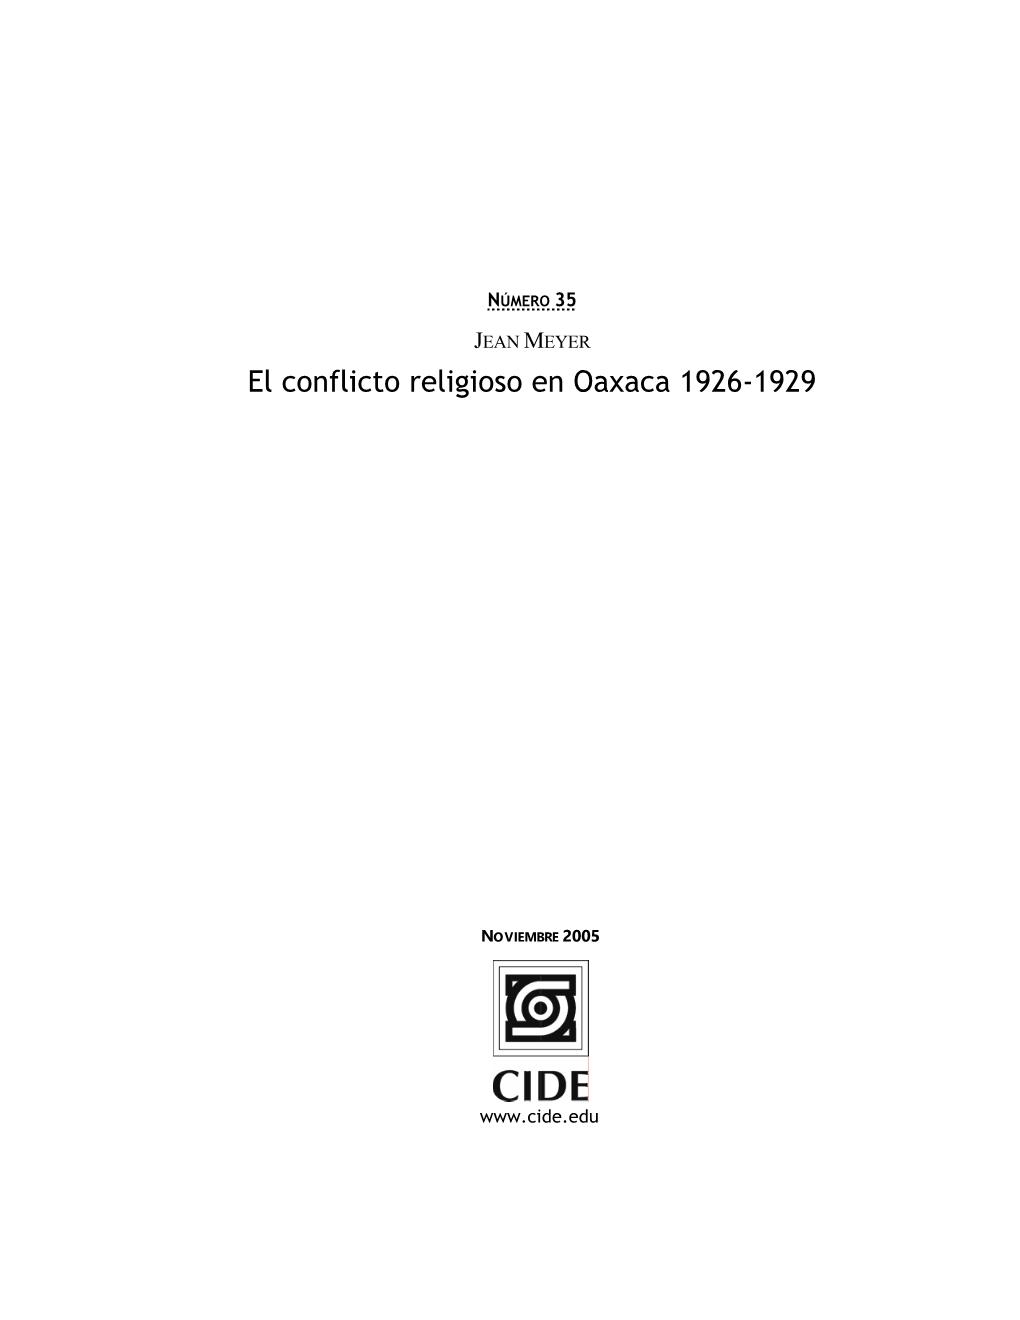 El Conflicto Religioso En Oaxaca 1926-1929